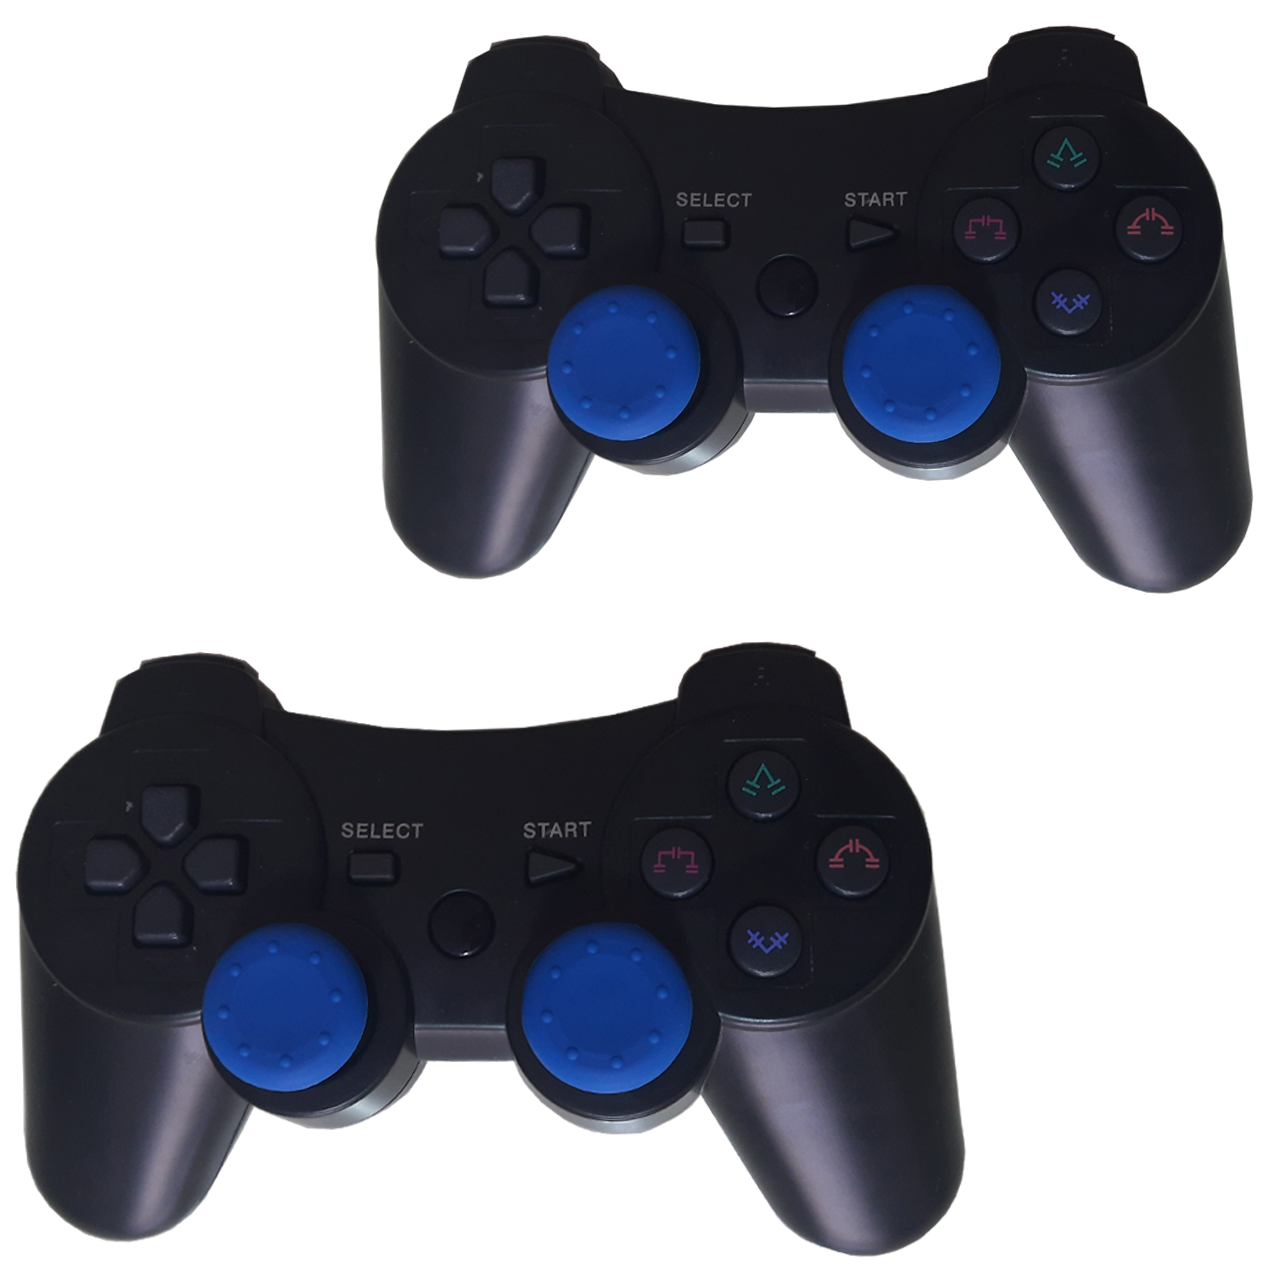 دسته بازی بی سیم مدل PS3 CONTROLLER BLUETOOTH مجموعه 2 عددی